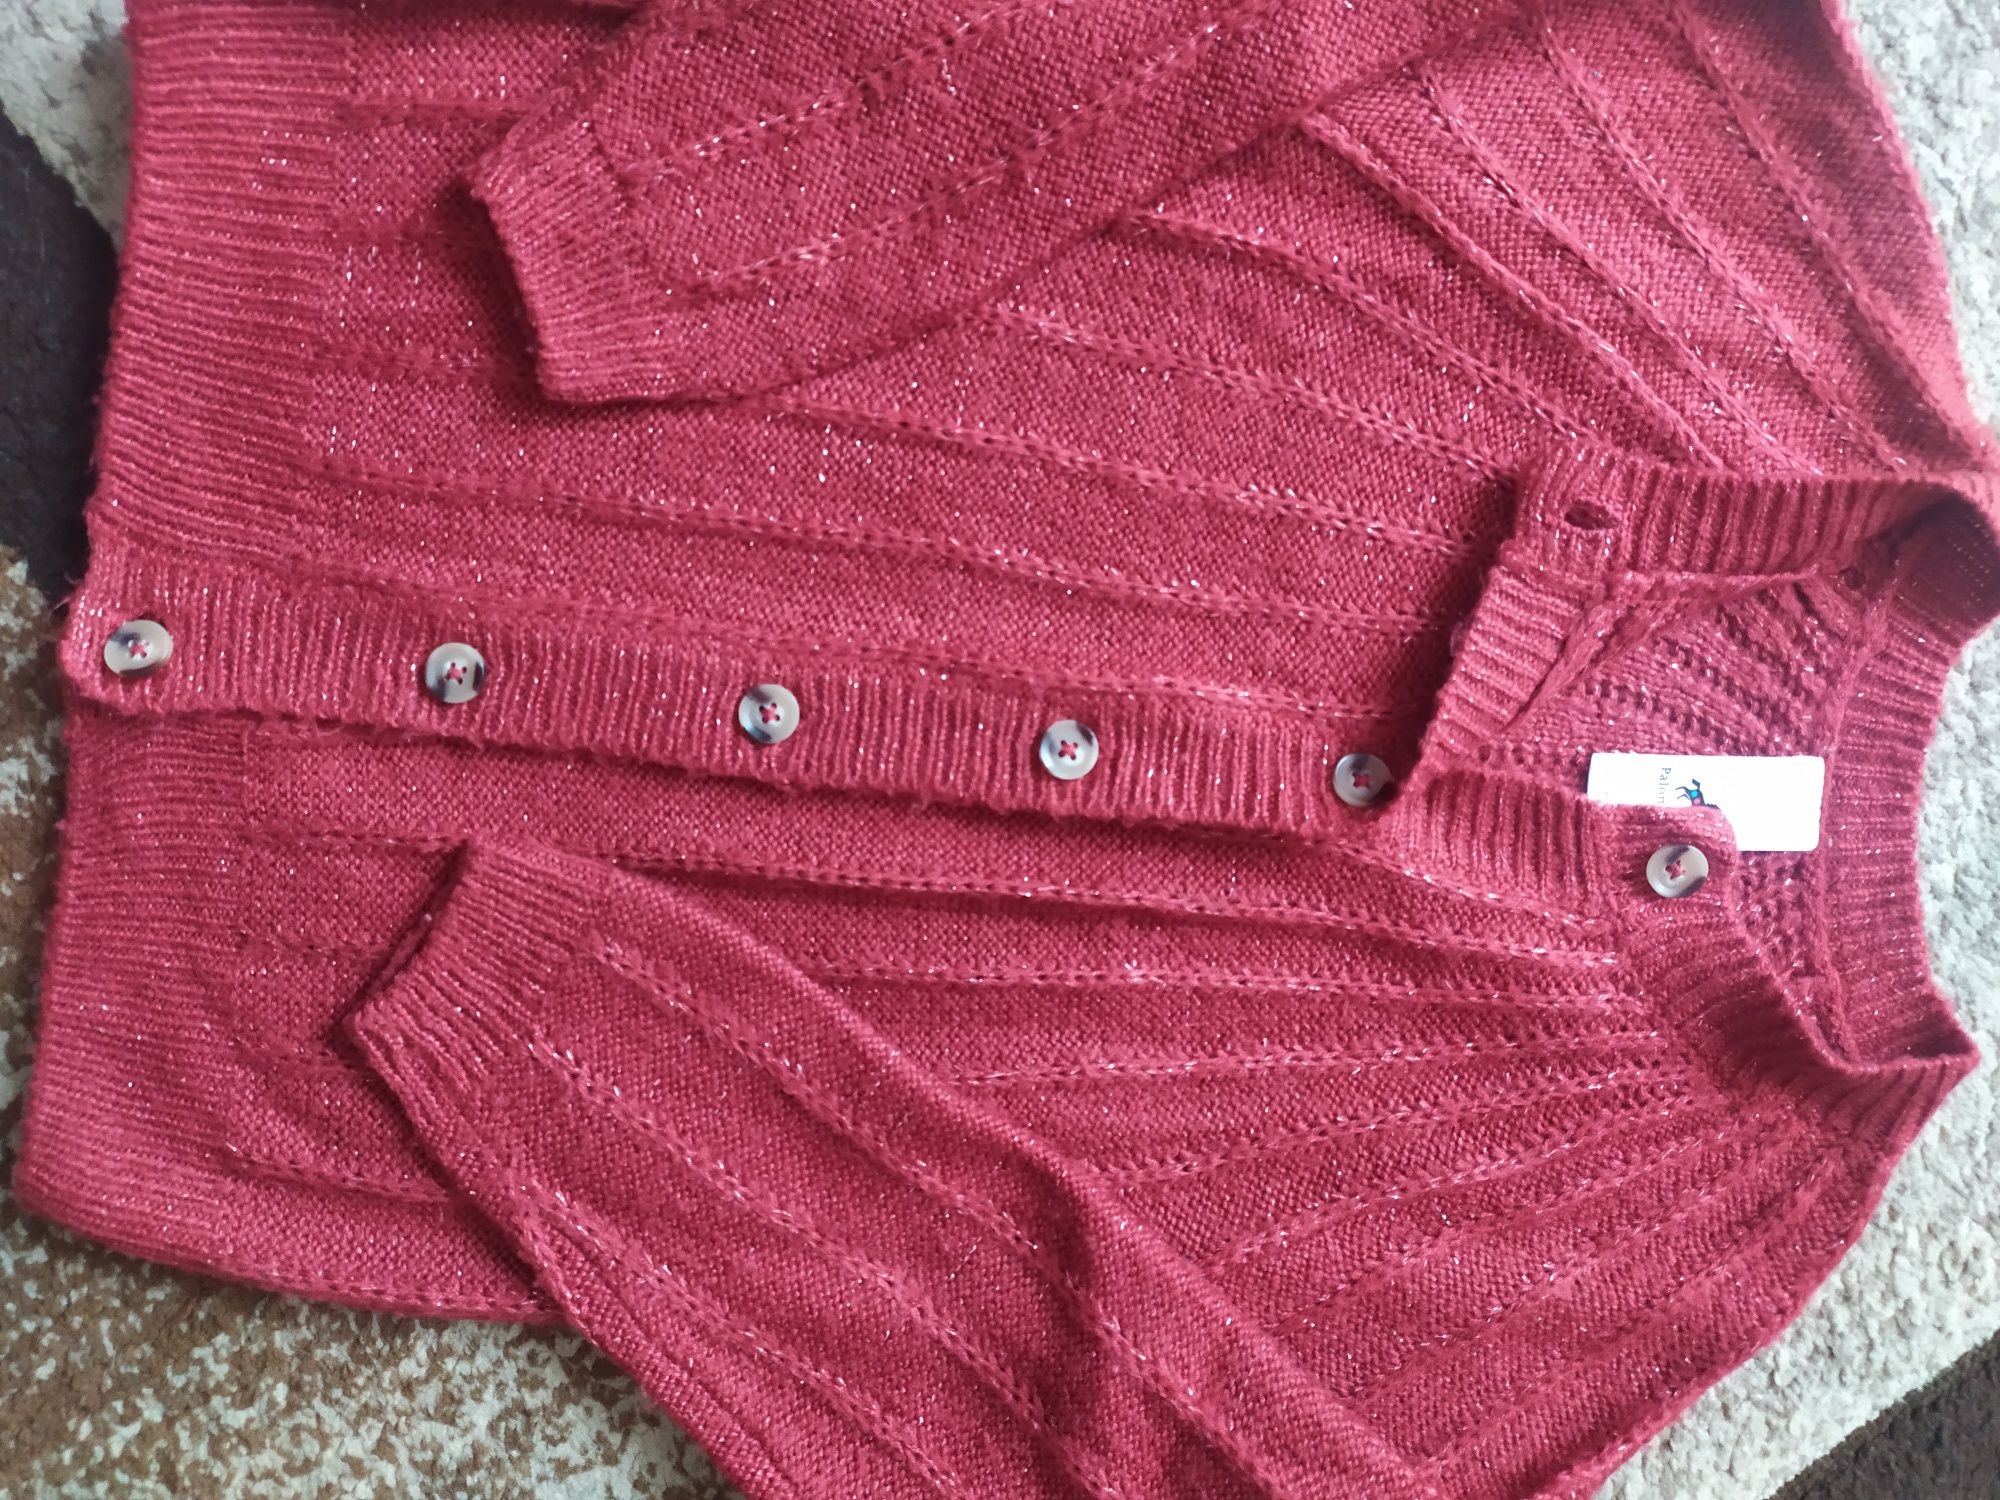 Sweter sweterek kardigan r.128 na święta mikołajki